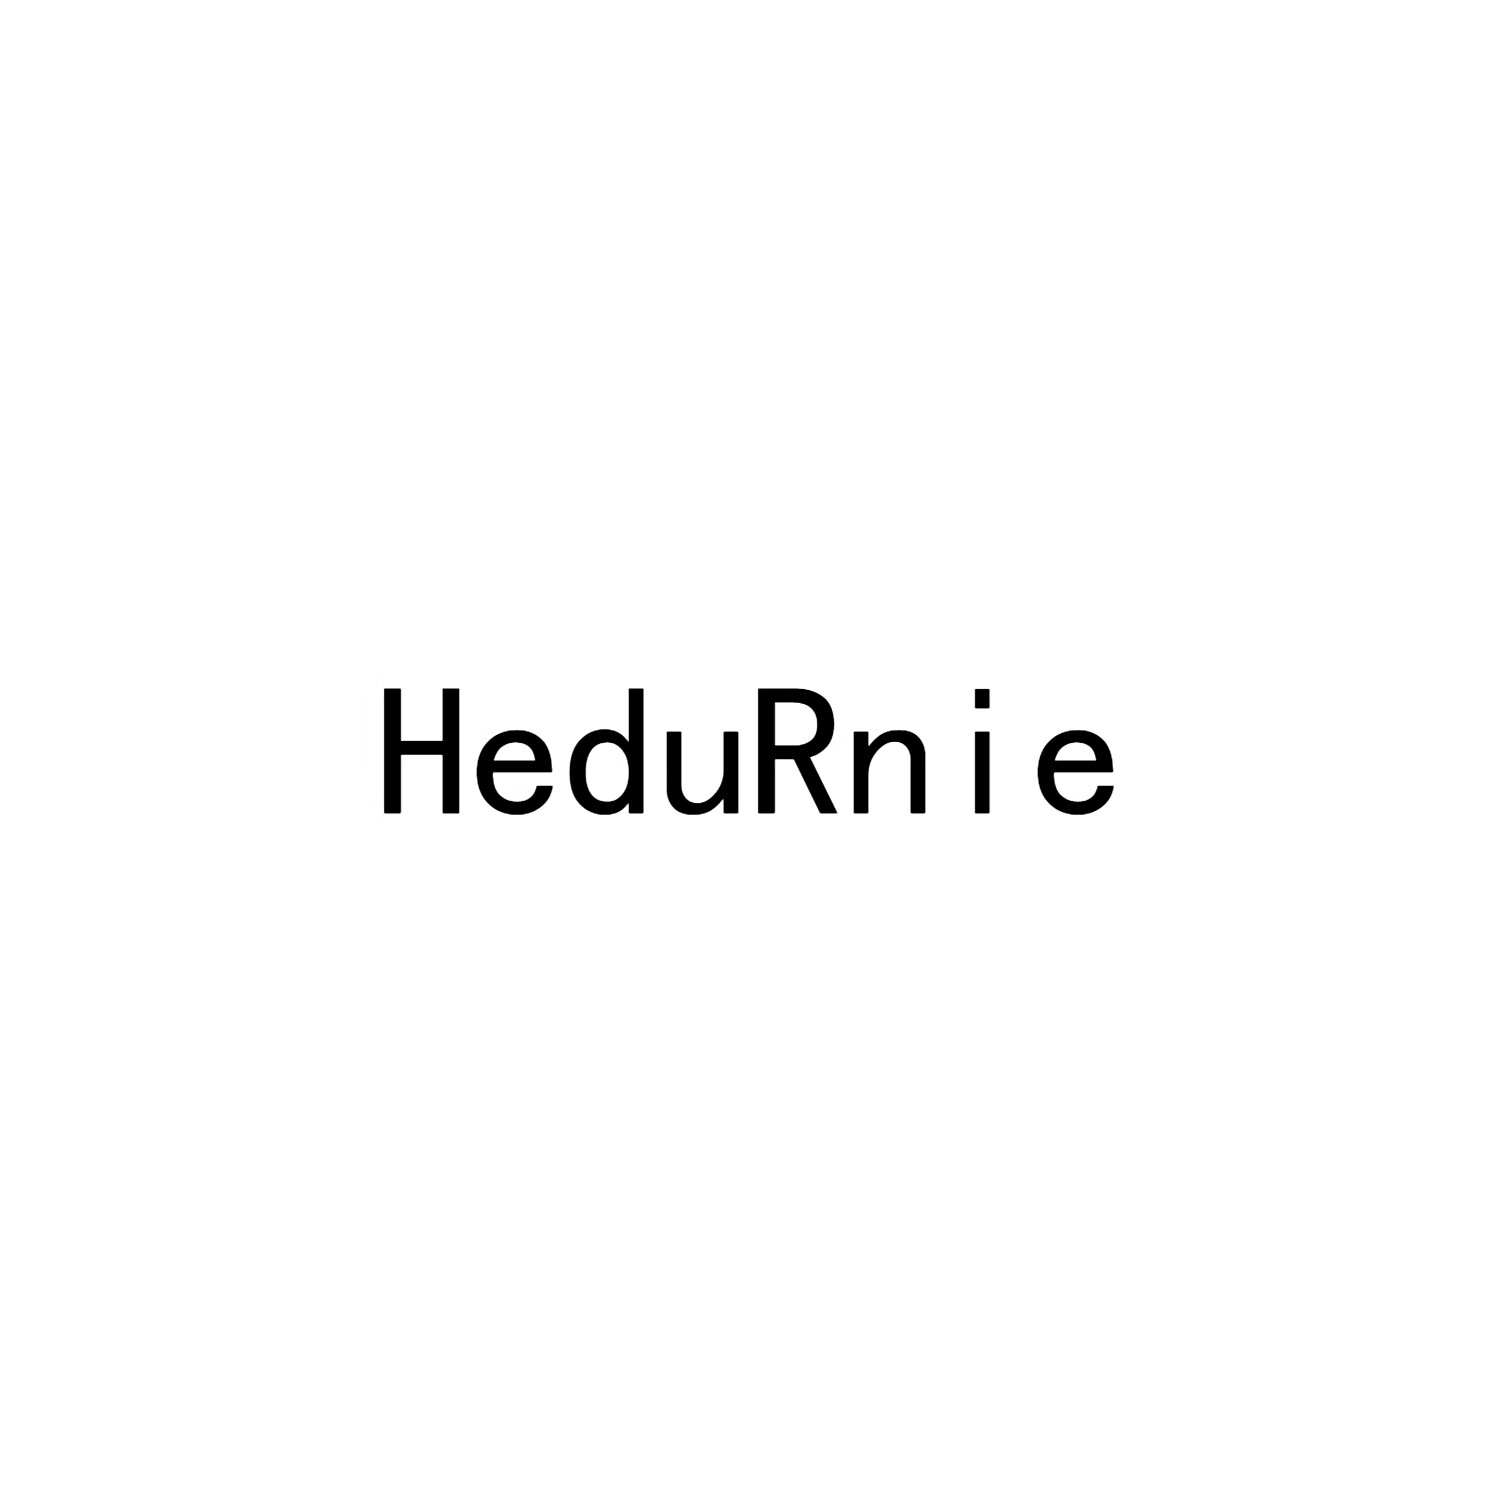 HeduRnie